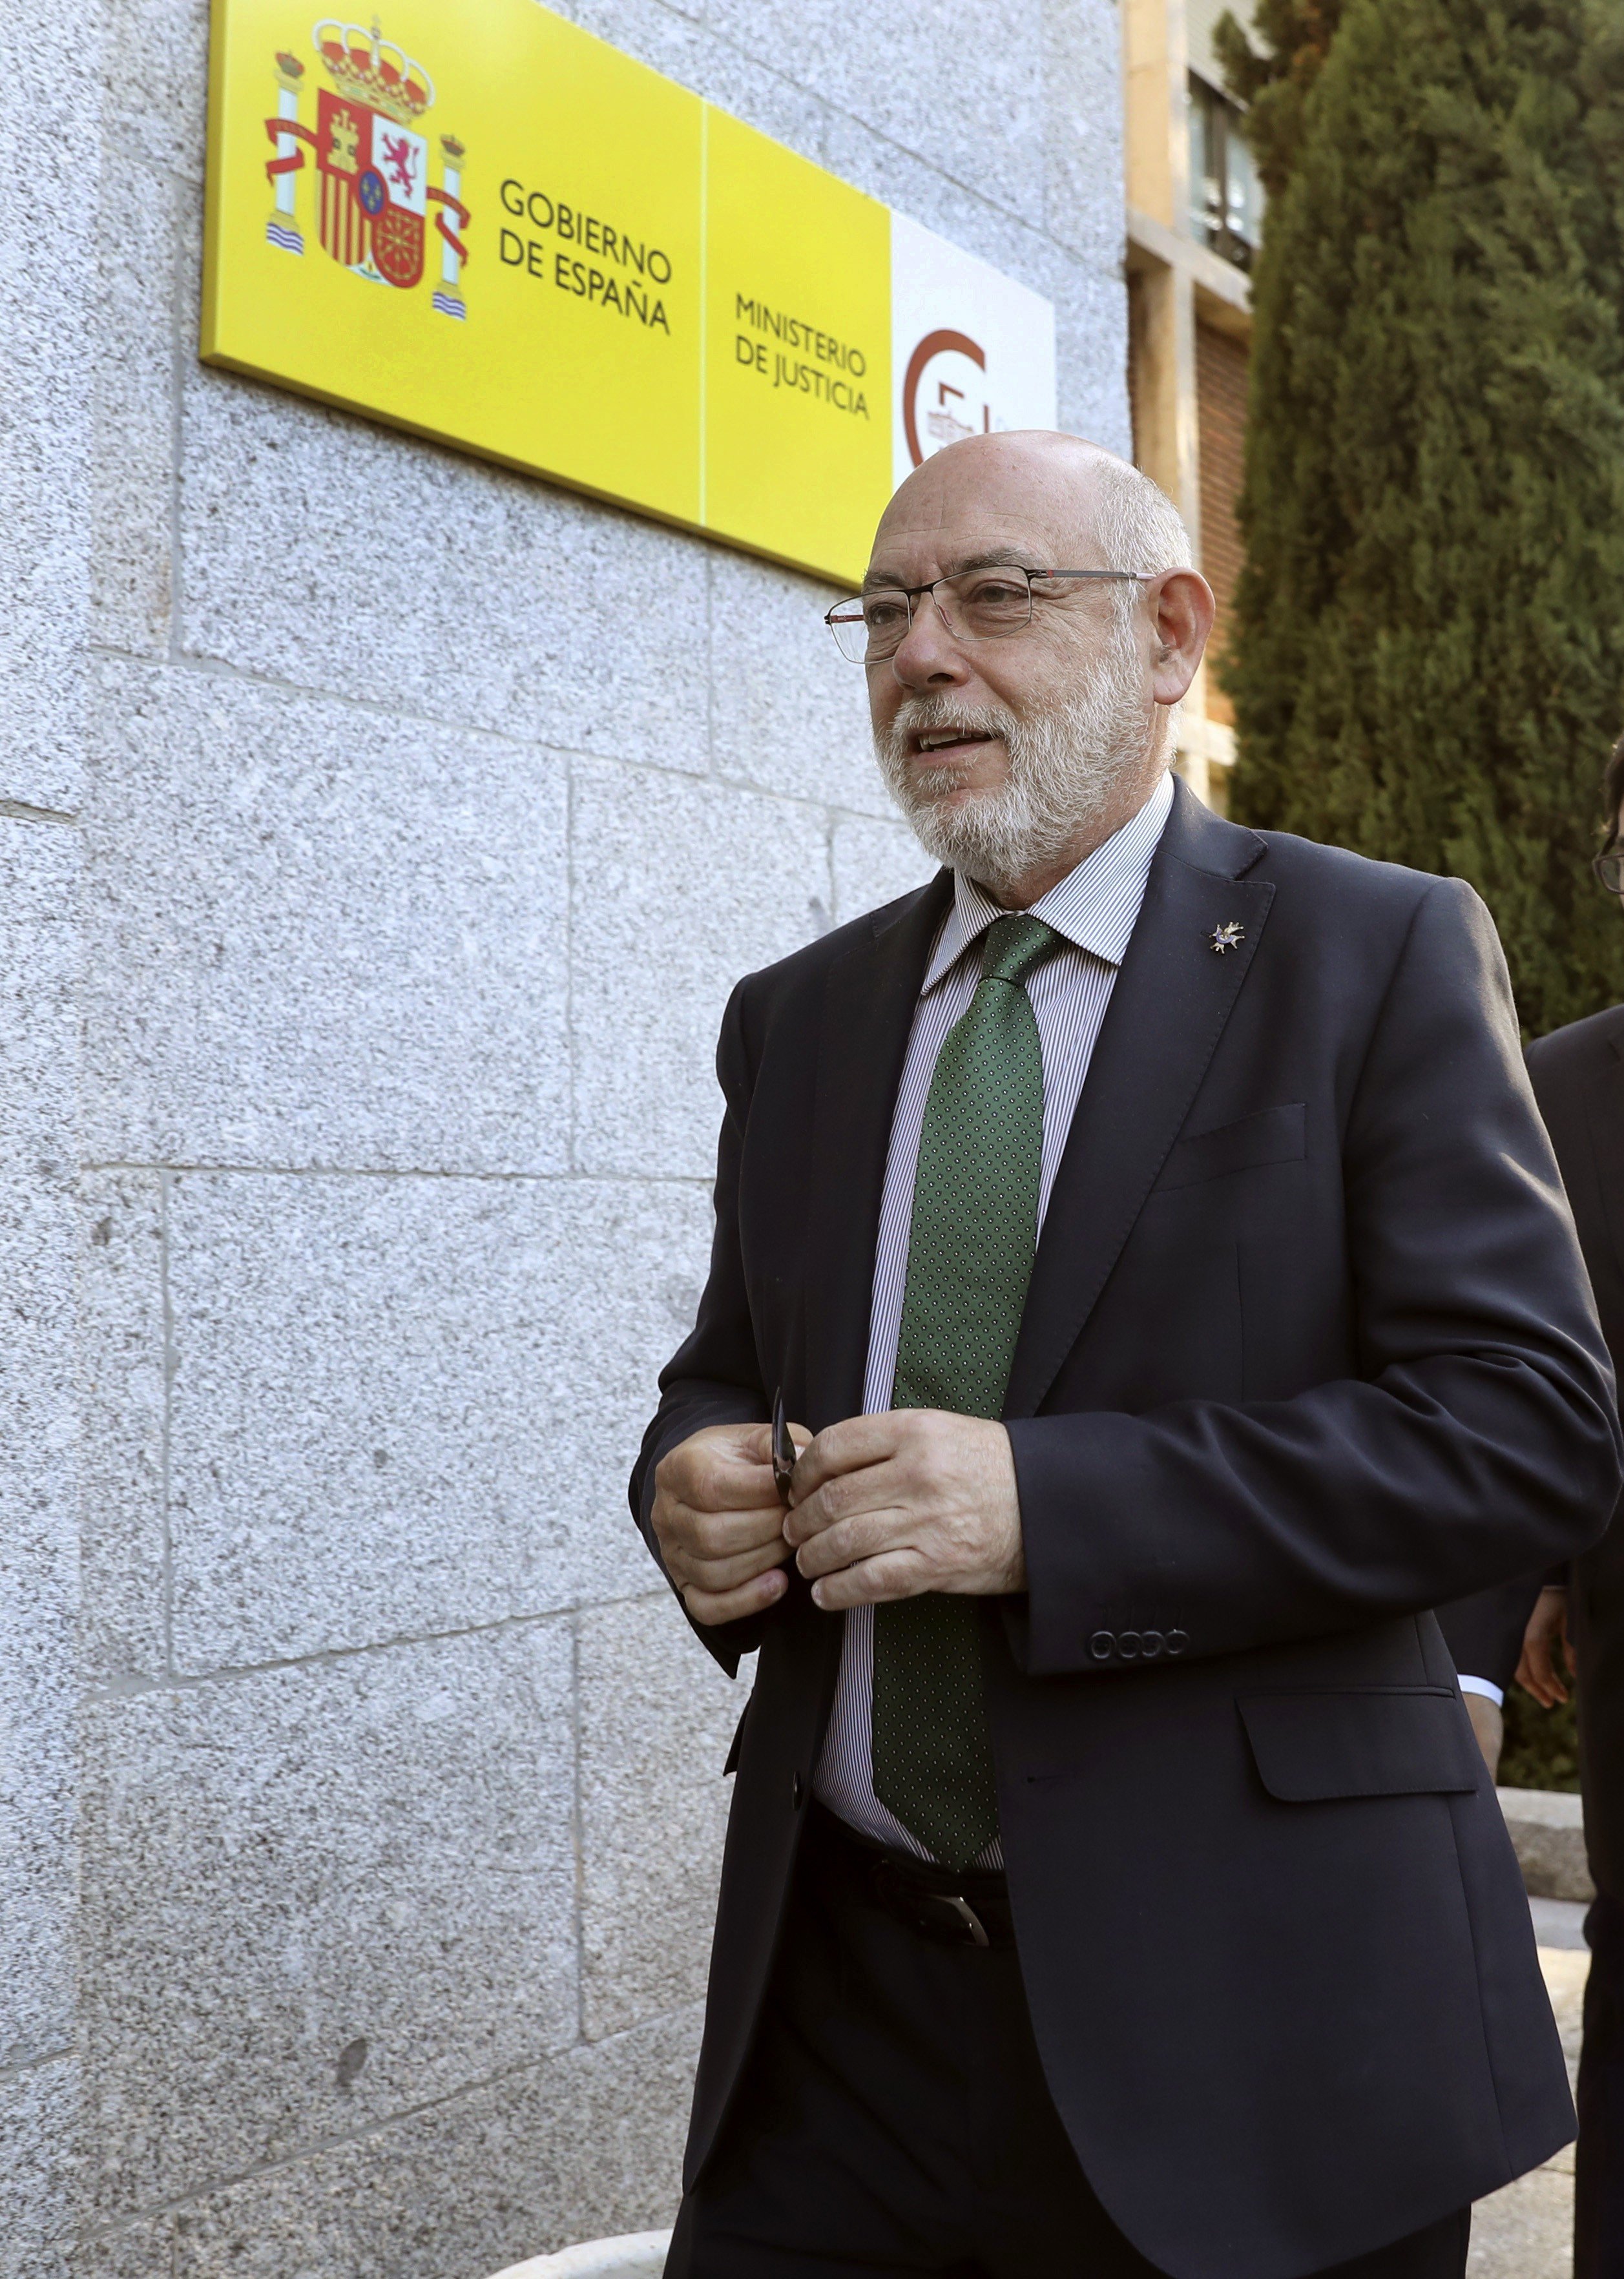 El fiscal general emmarca en la "cortesia institucional" la visita a Puigdemont